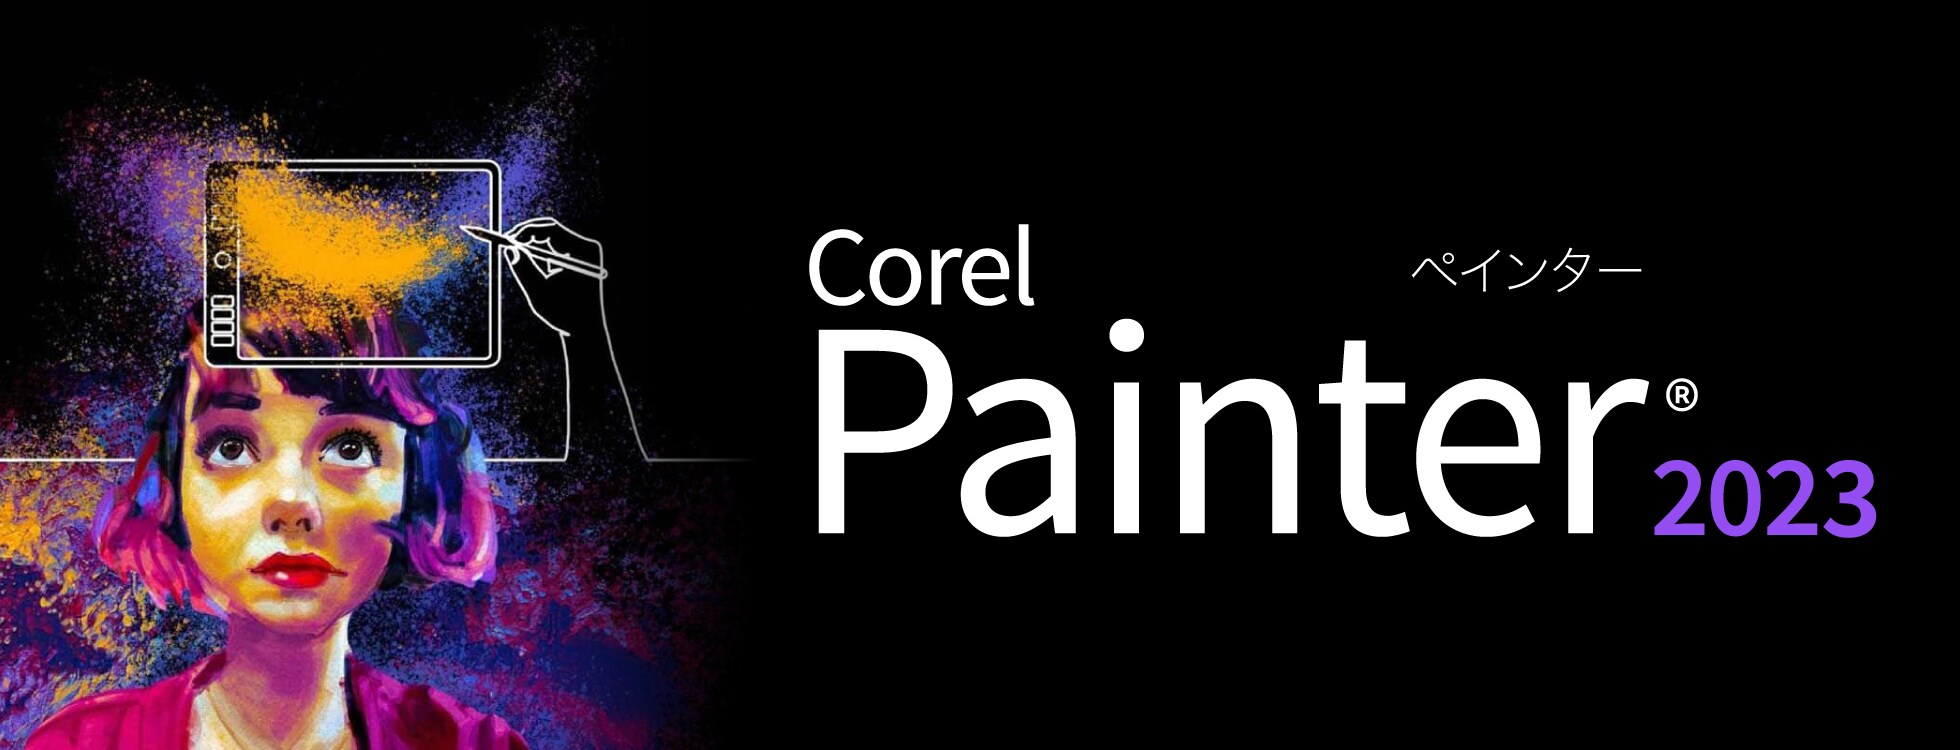 Corel Painter 2023 - デジタル絵画、アートに